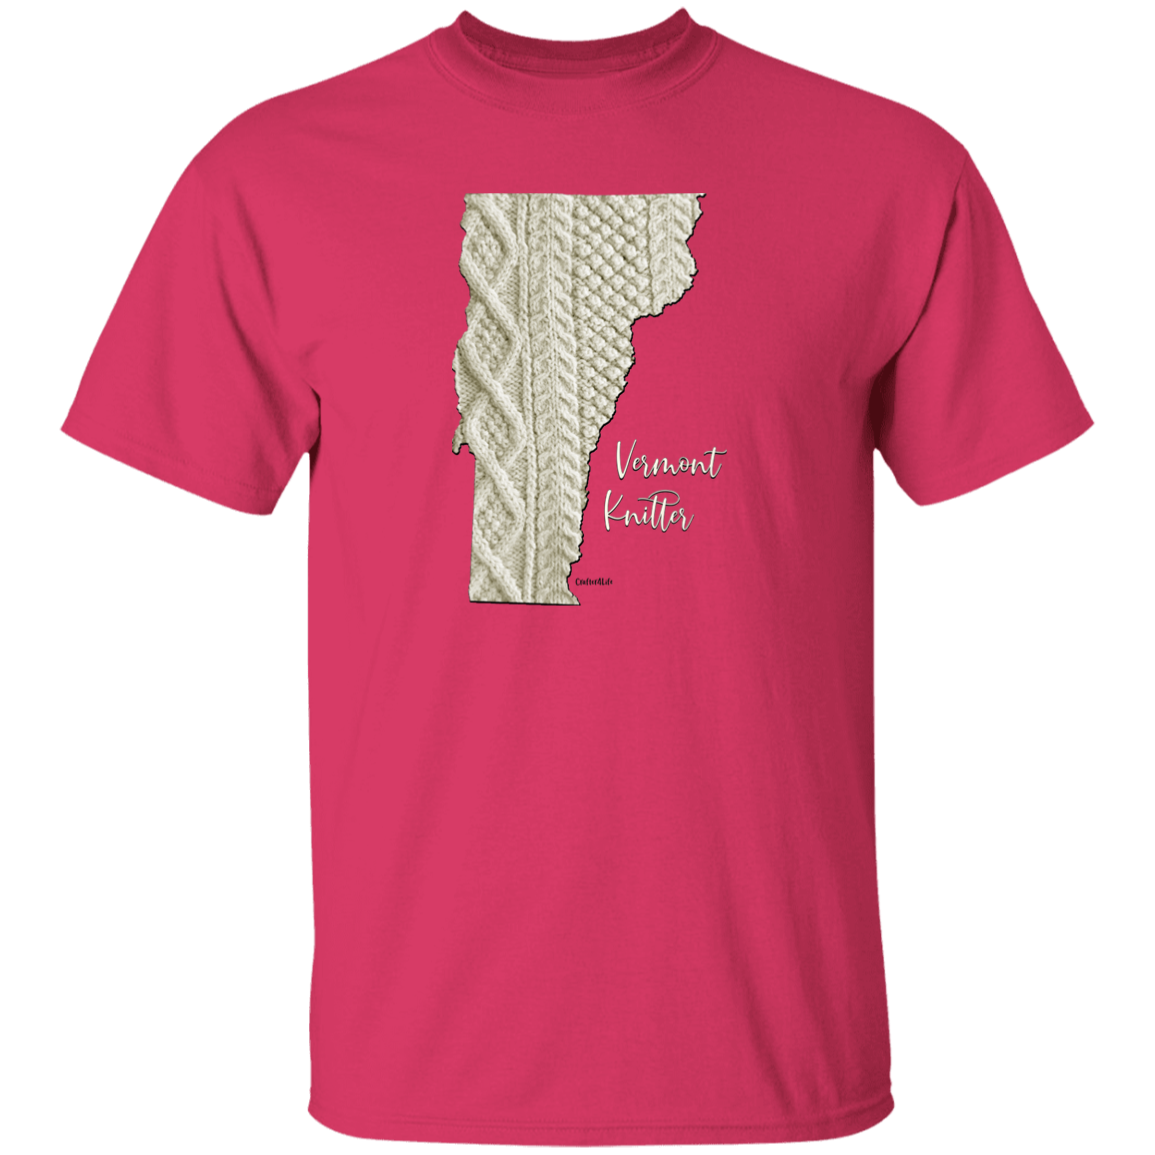 Vermont Knitter Cotton T-Shirt